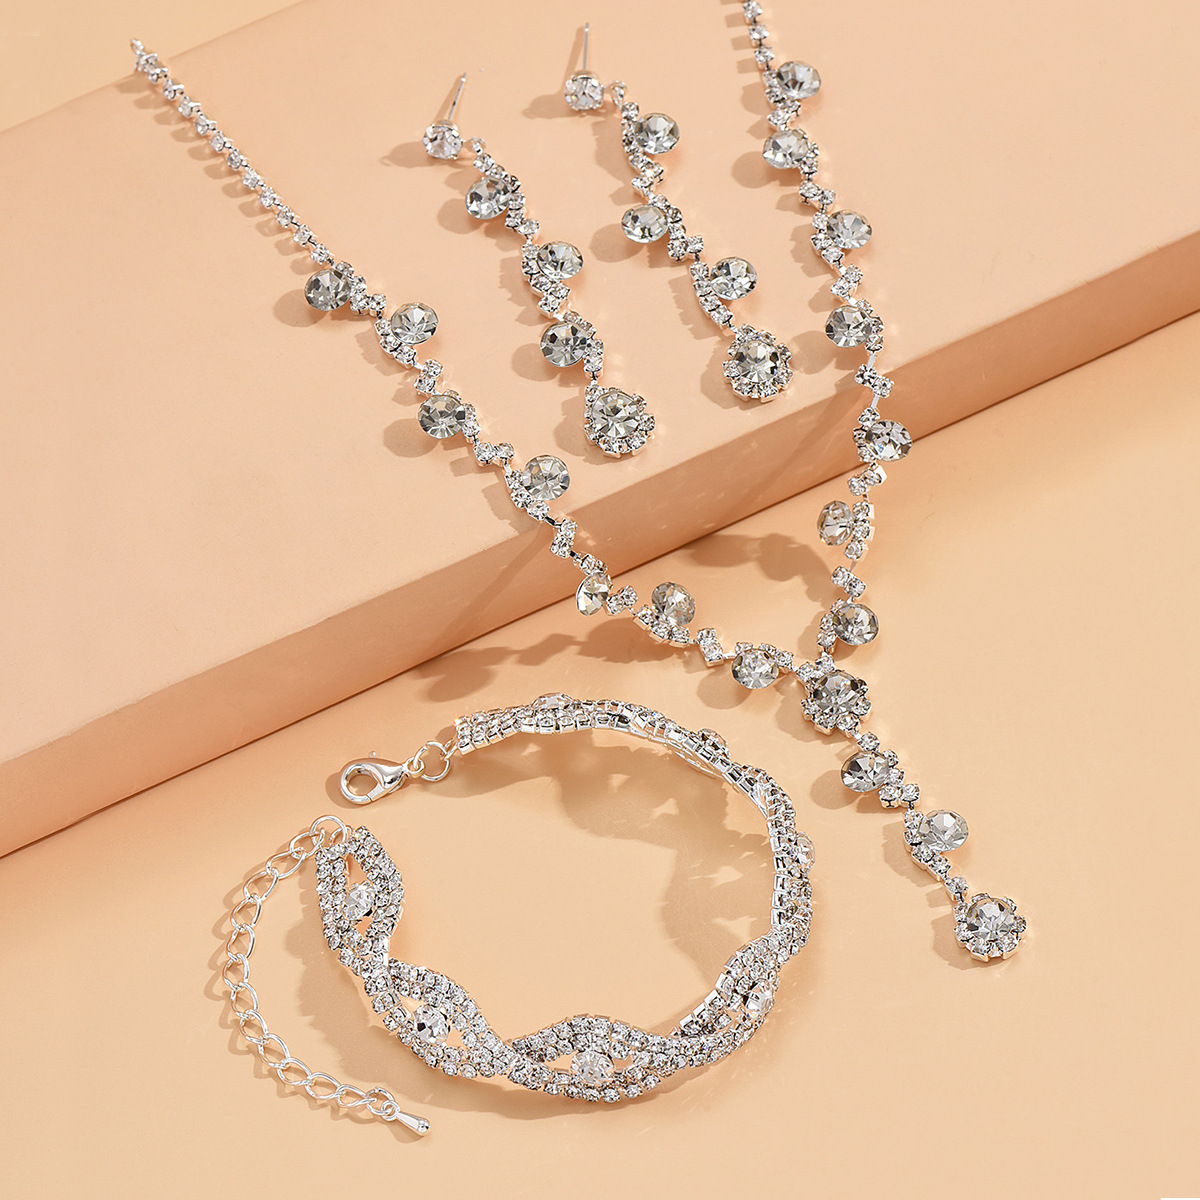 869-746 Silver necklace earrings bracelet set